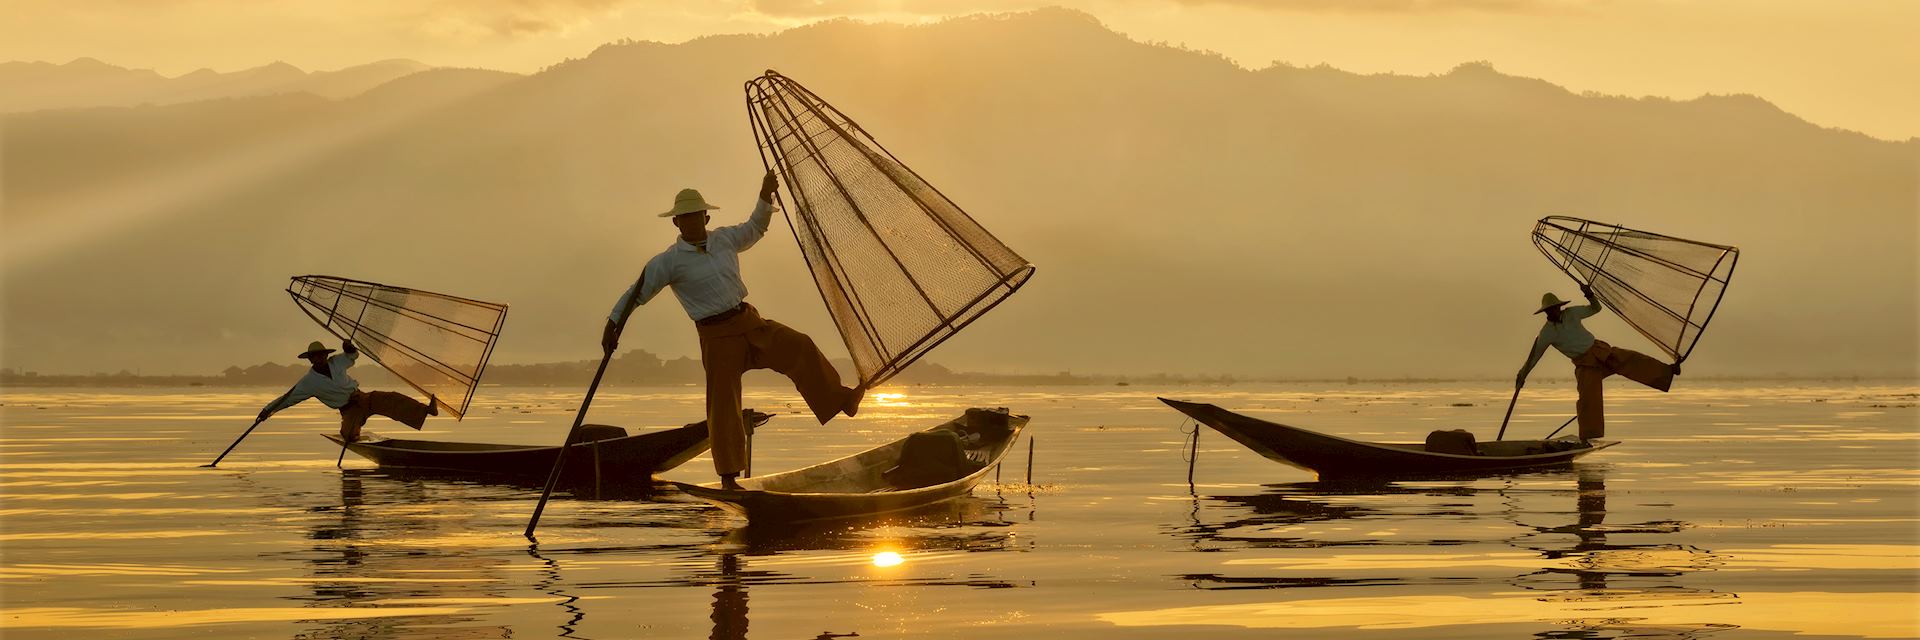 Intha fishermen, Myanmar